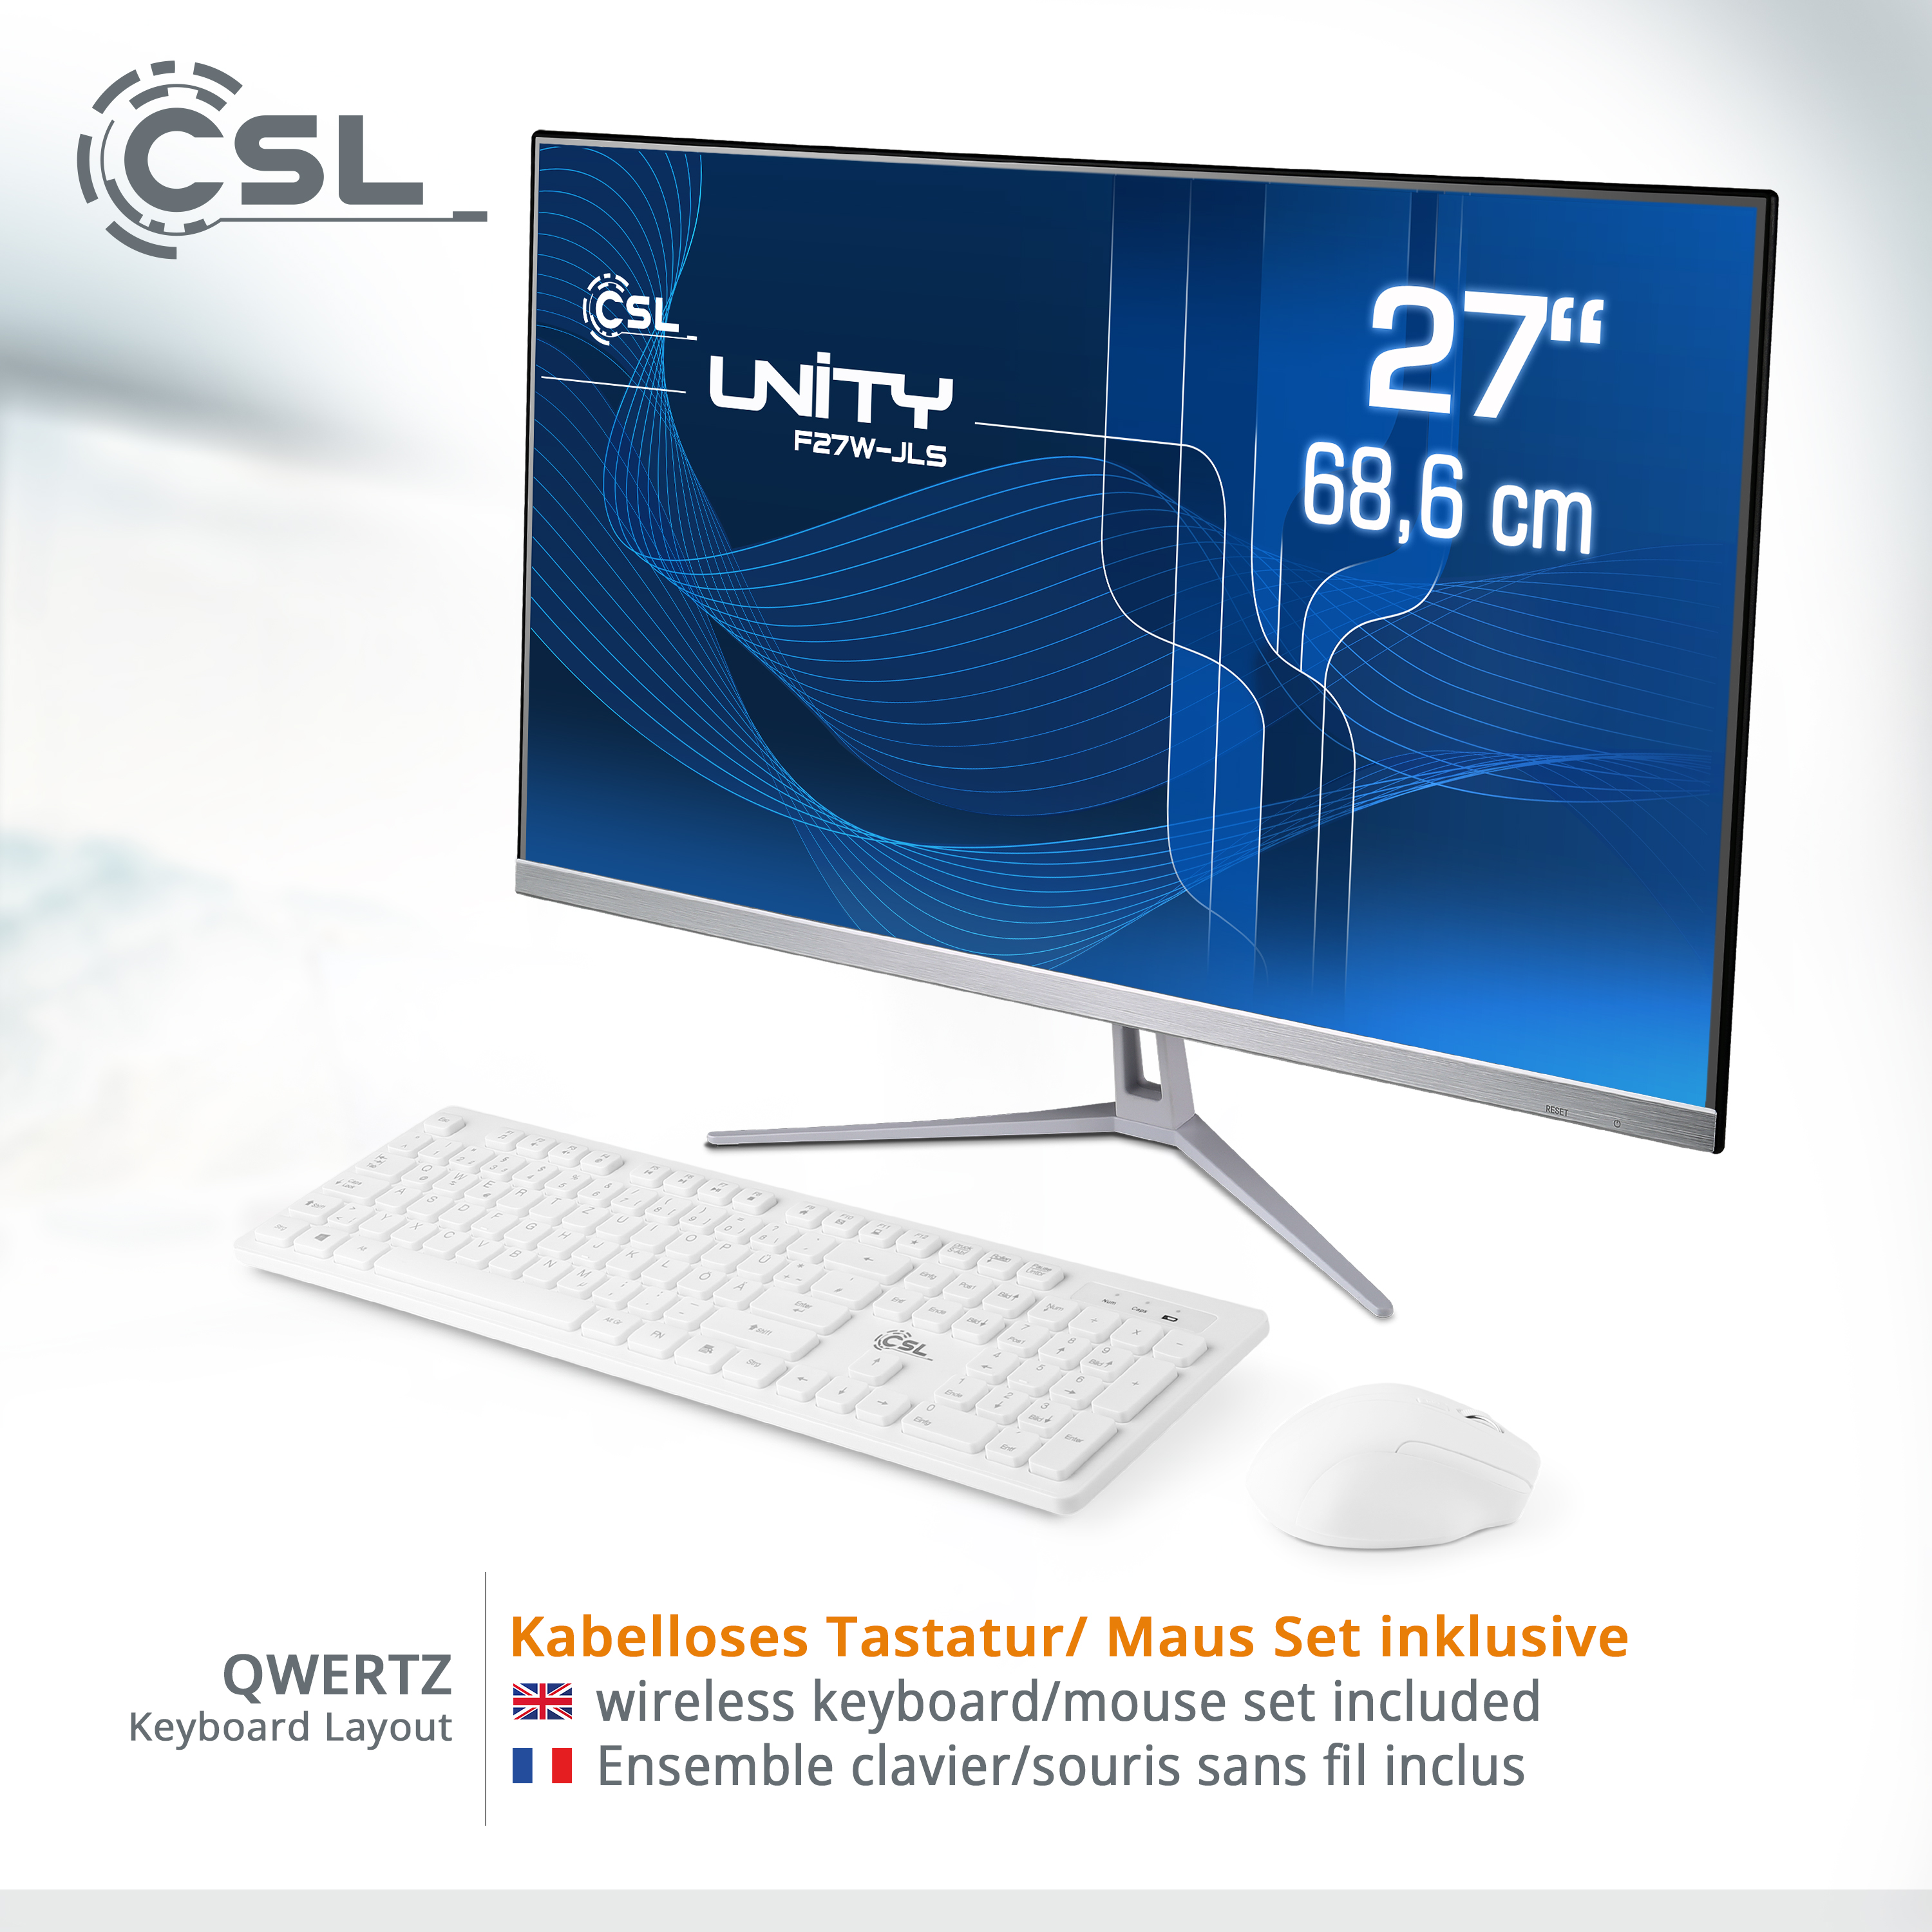 CSL Unity F27W-JLS Pentium / 27 11 RAM, GB 32 Pro, mit 512 All-in-One-PC / Win SSD, / Display, UHD GB 32 RAM weiß GB 512 Intel® GB Graphics, Zoll